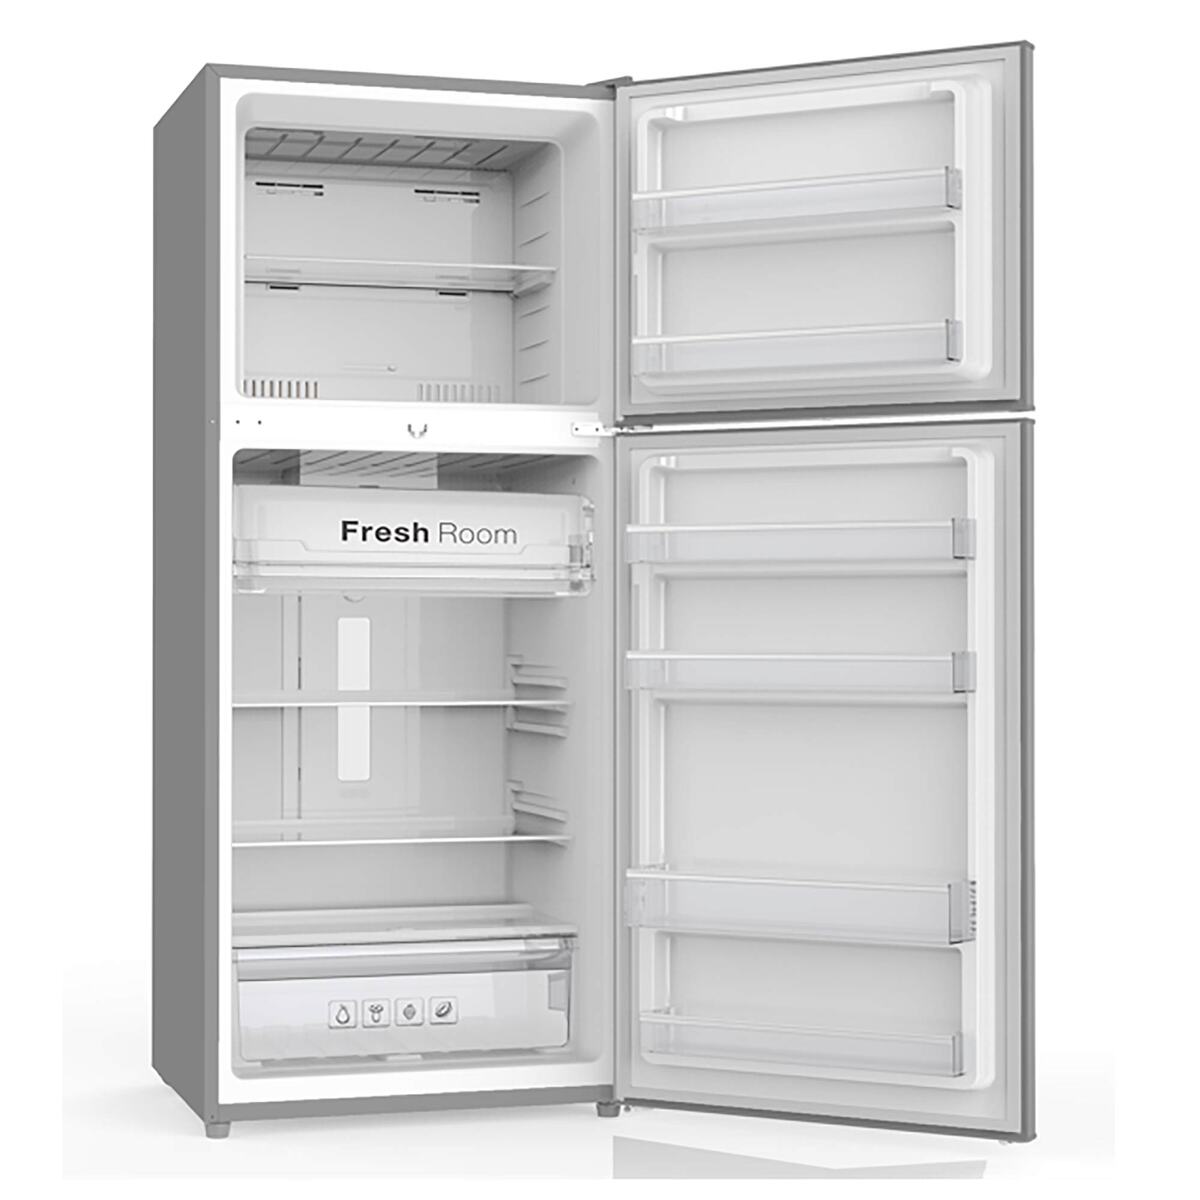 Akai Double Door Refrigerator AR-6000Y 410 Ltr